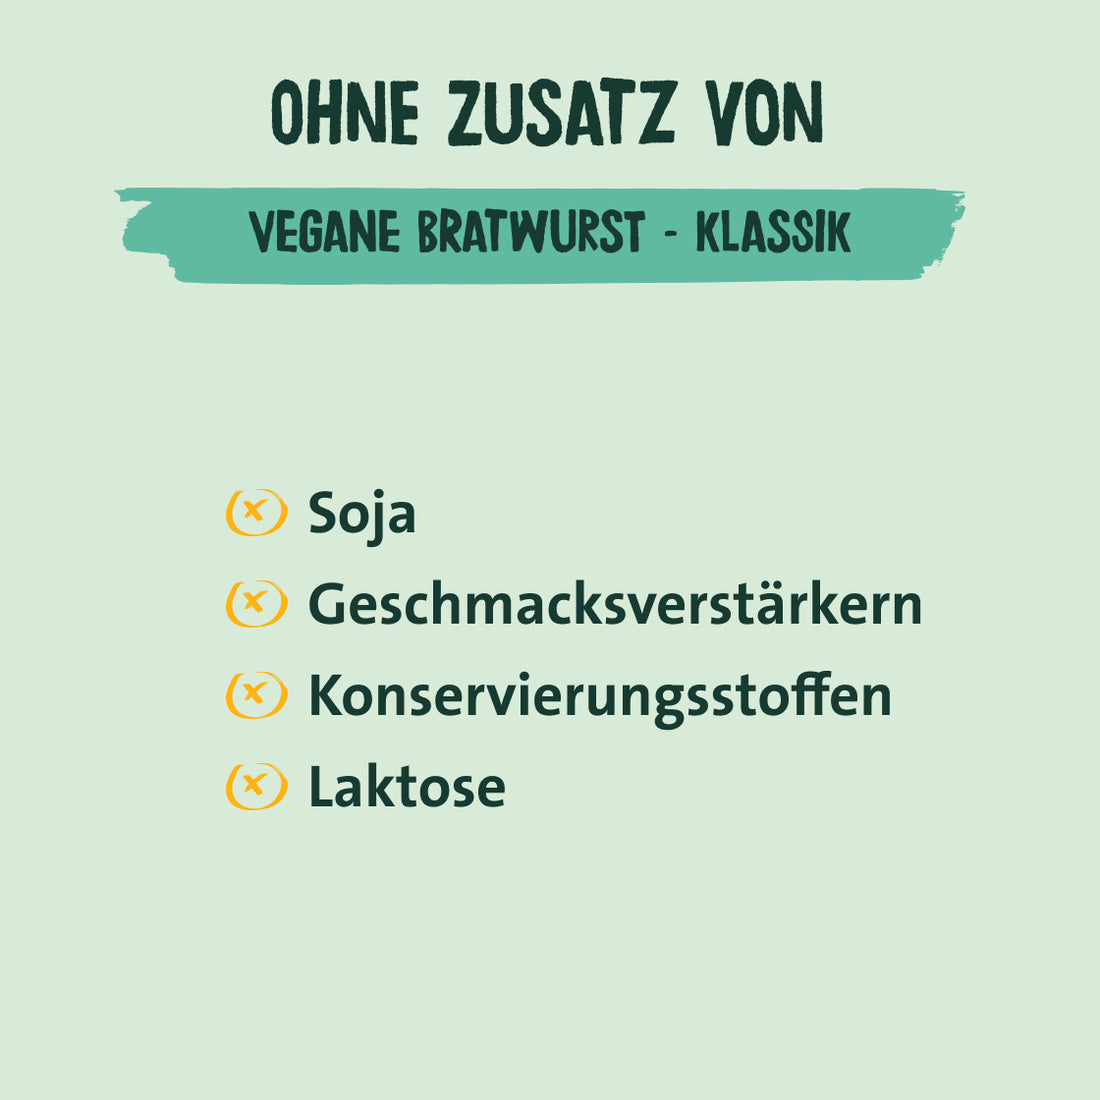 Easy To Mix vegane Bratwurst - Klassik